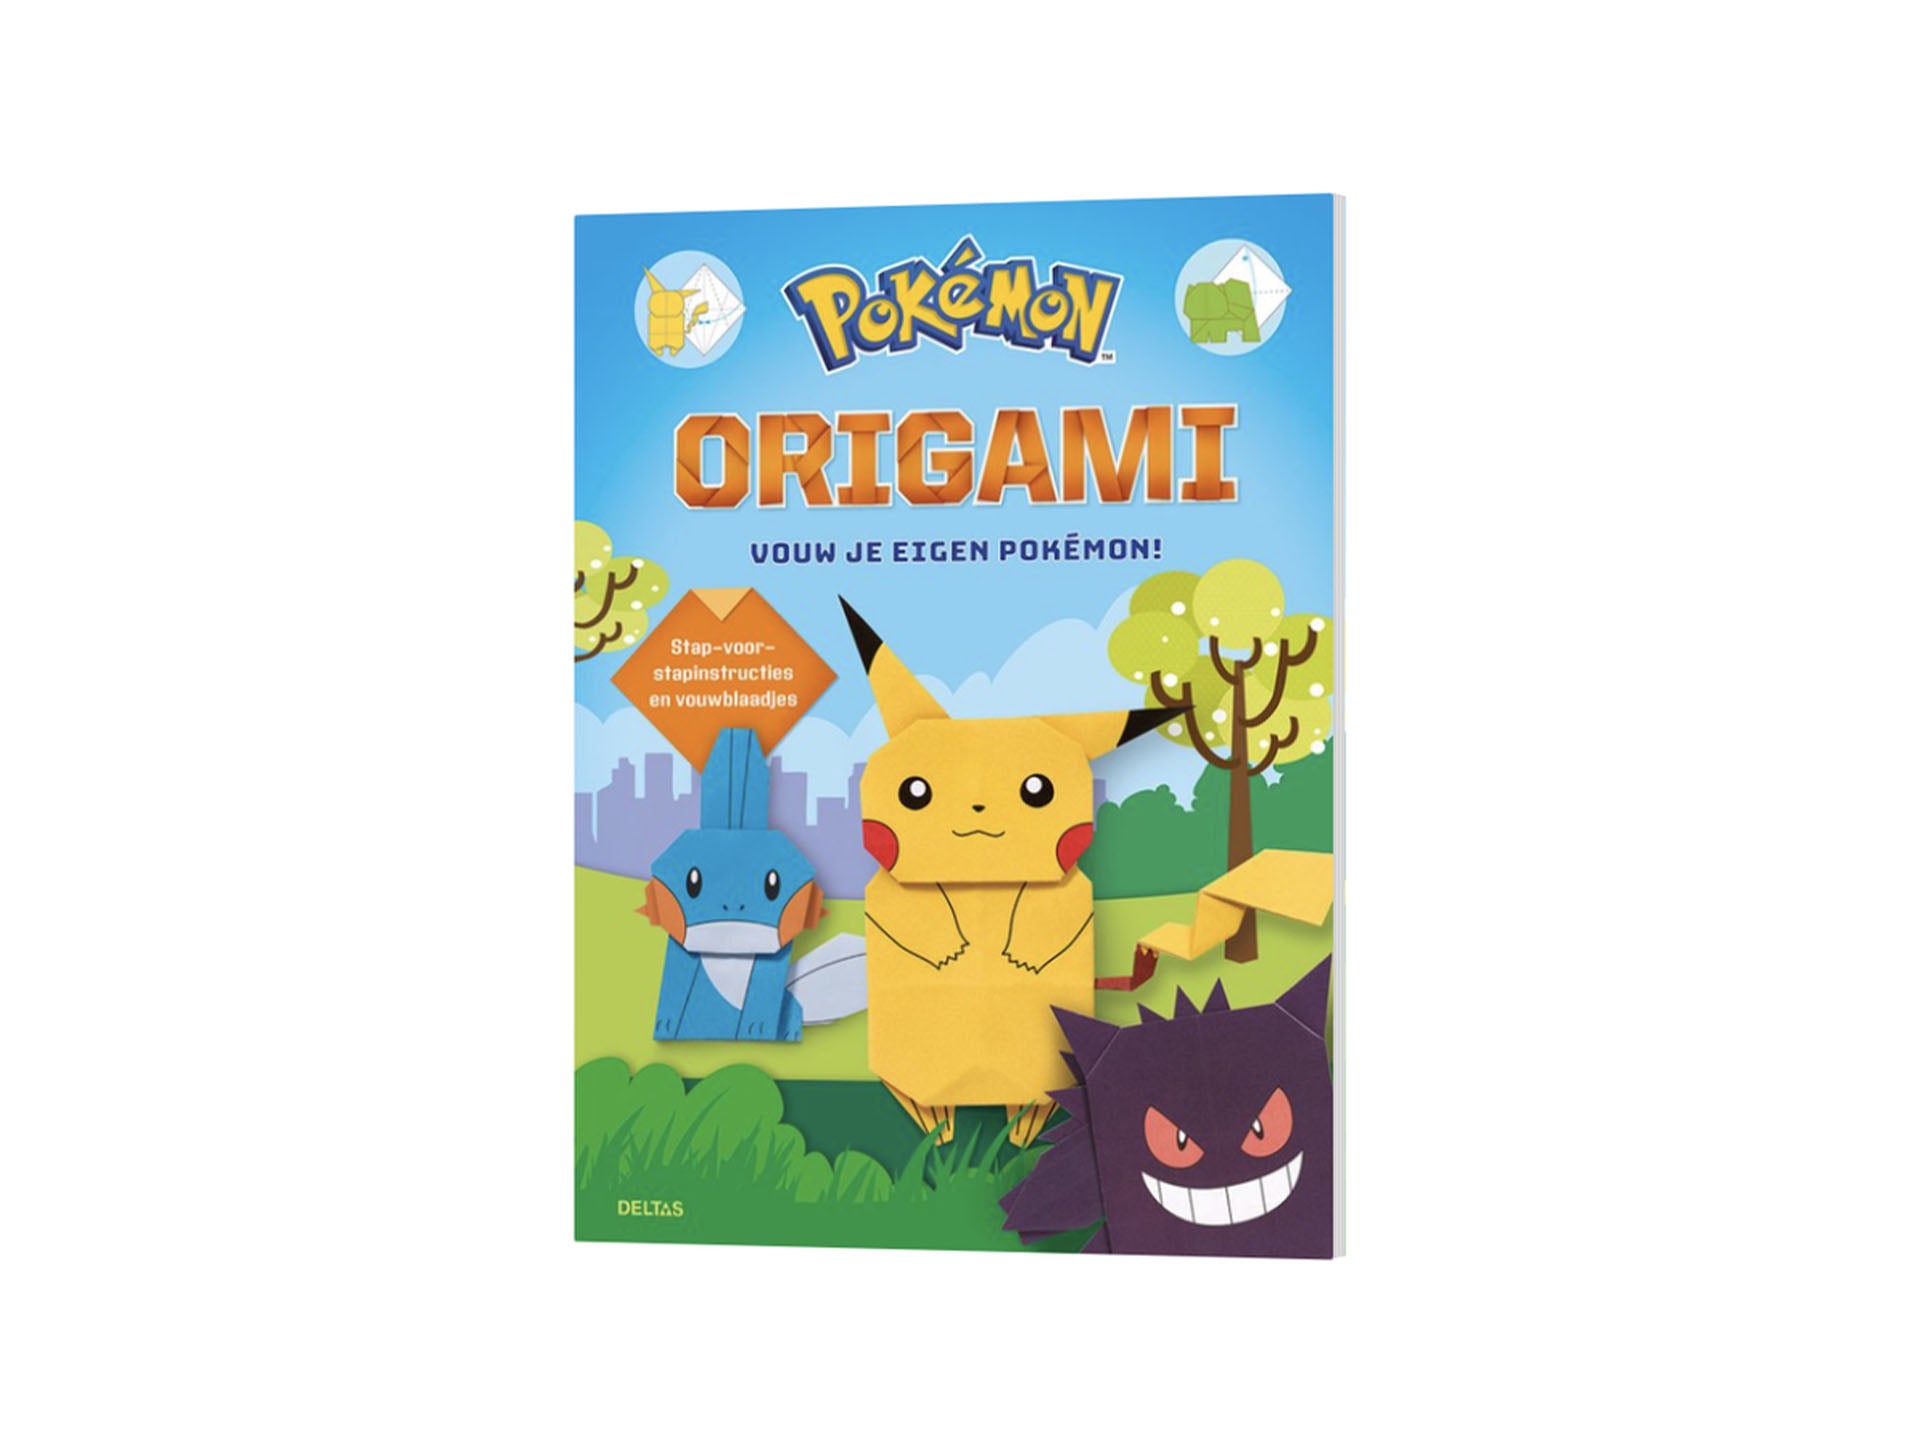 Pokémon Origami